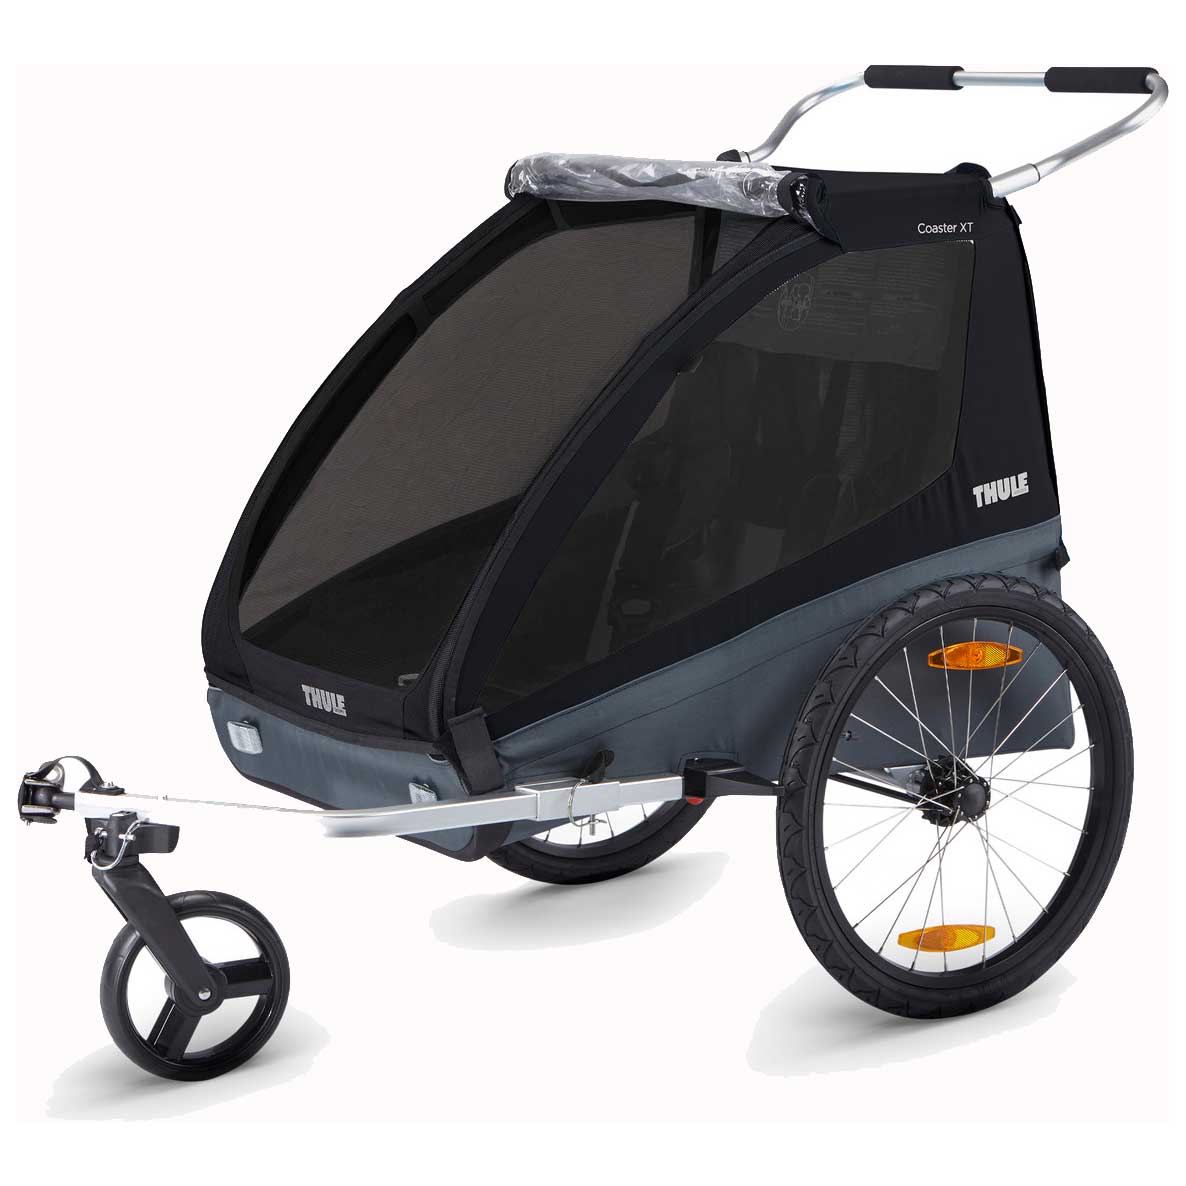 Imagen de Thule Coaster XT Remolque Bicicleta para 1-2 Niños - Kit de conversión - negro